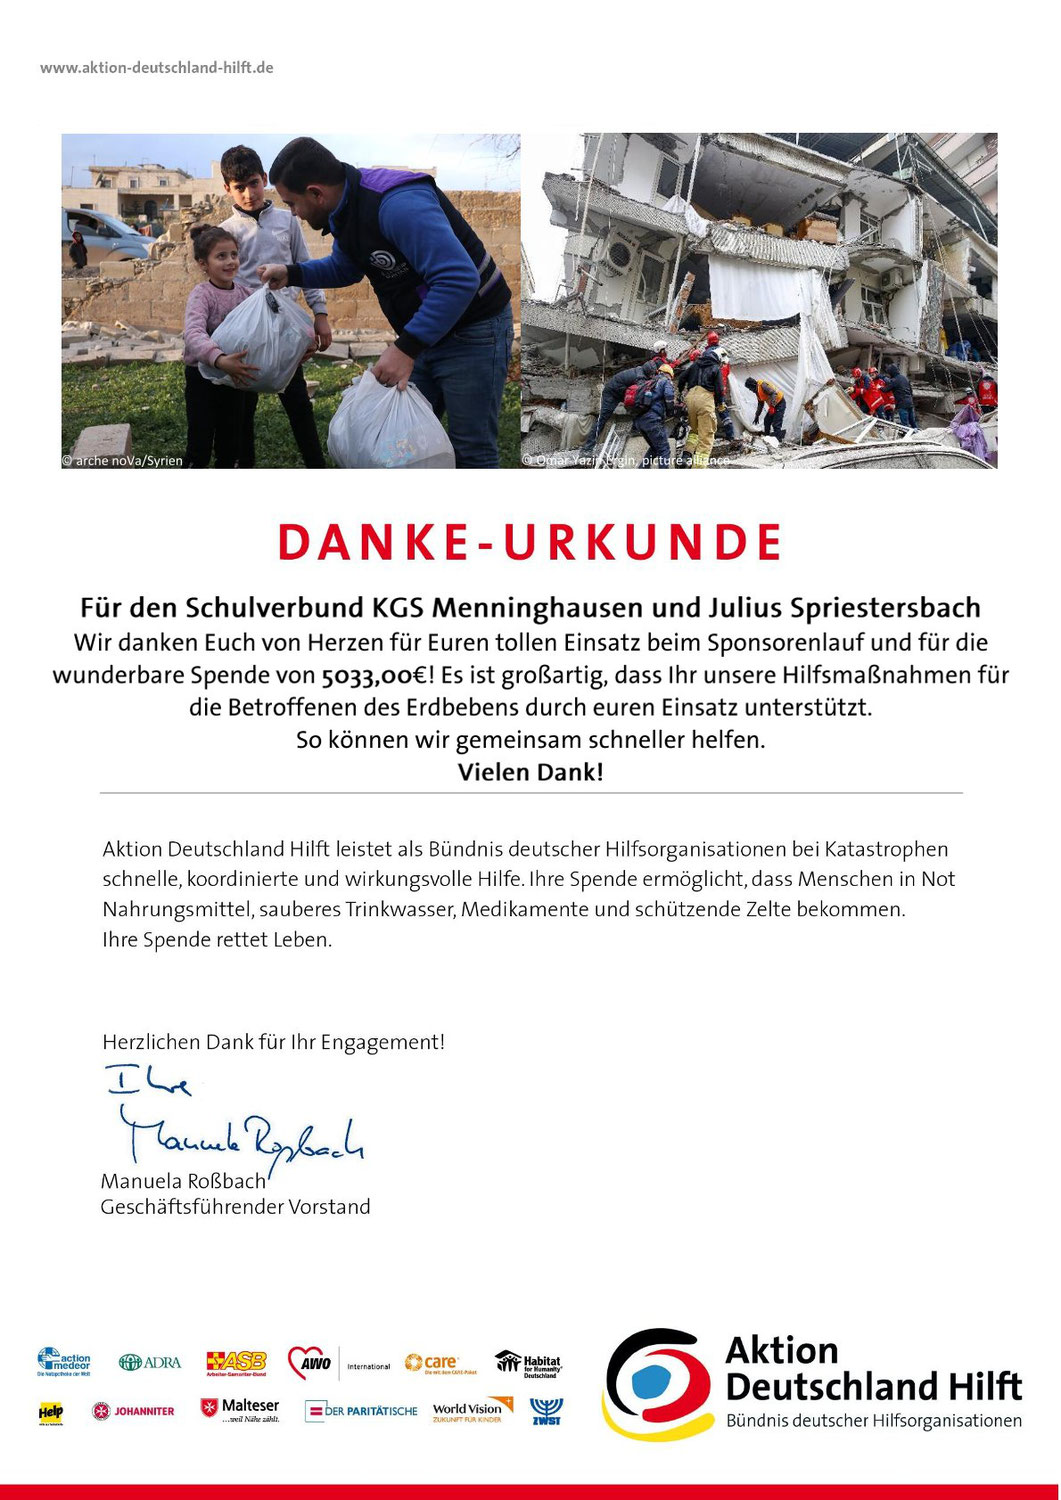 Spendenlauf für die Erdbebenregion